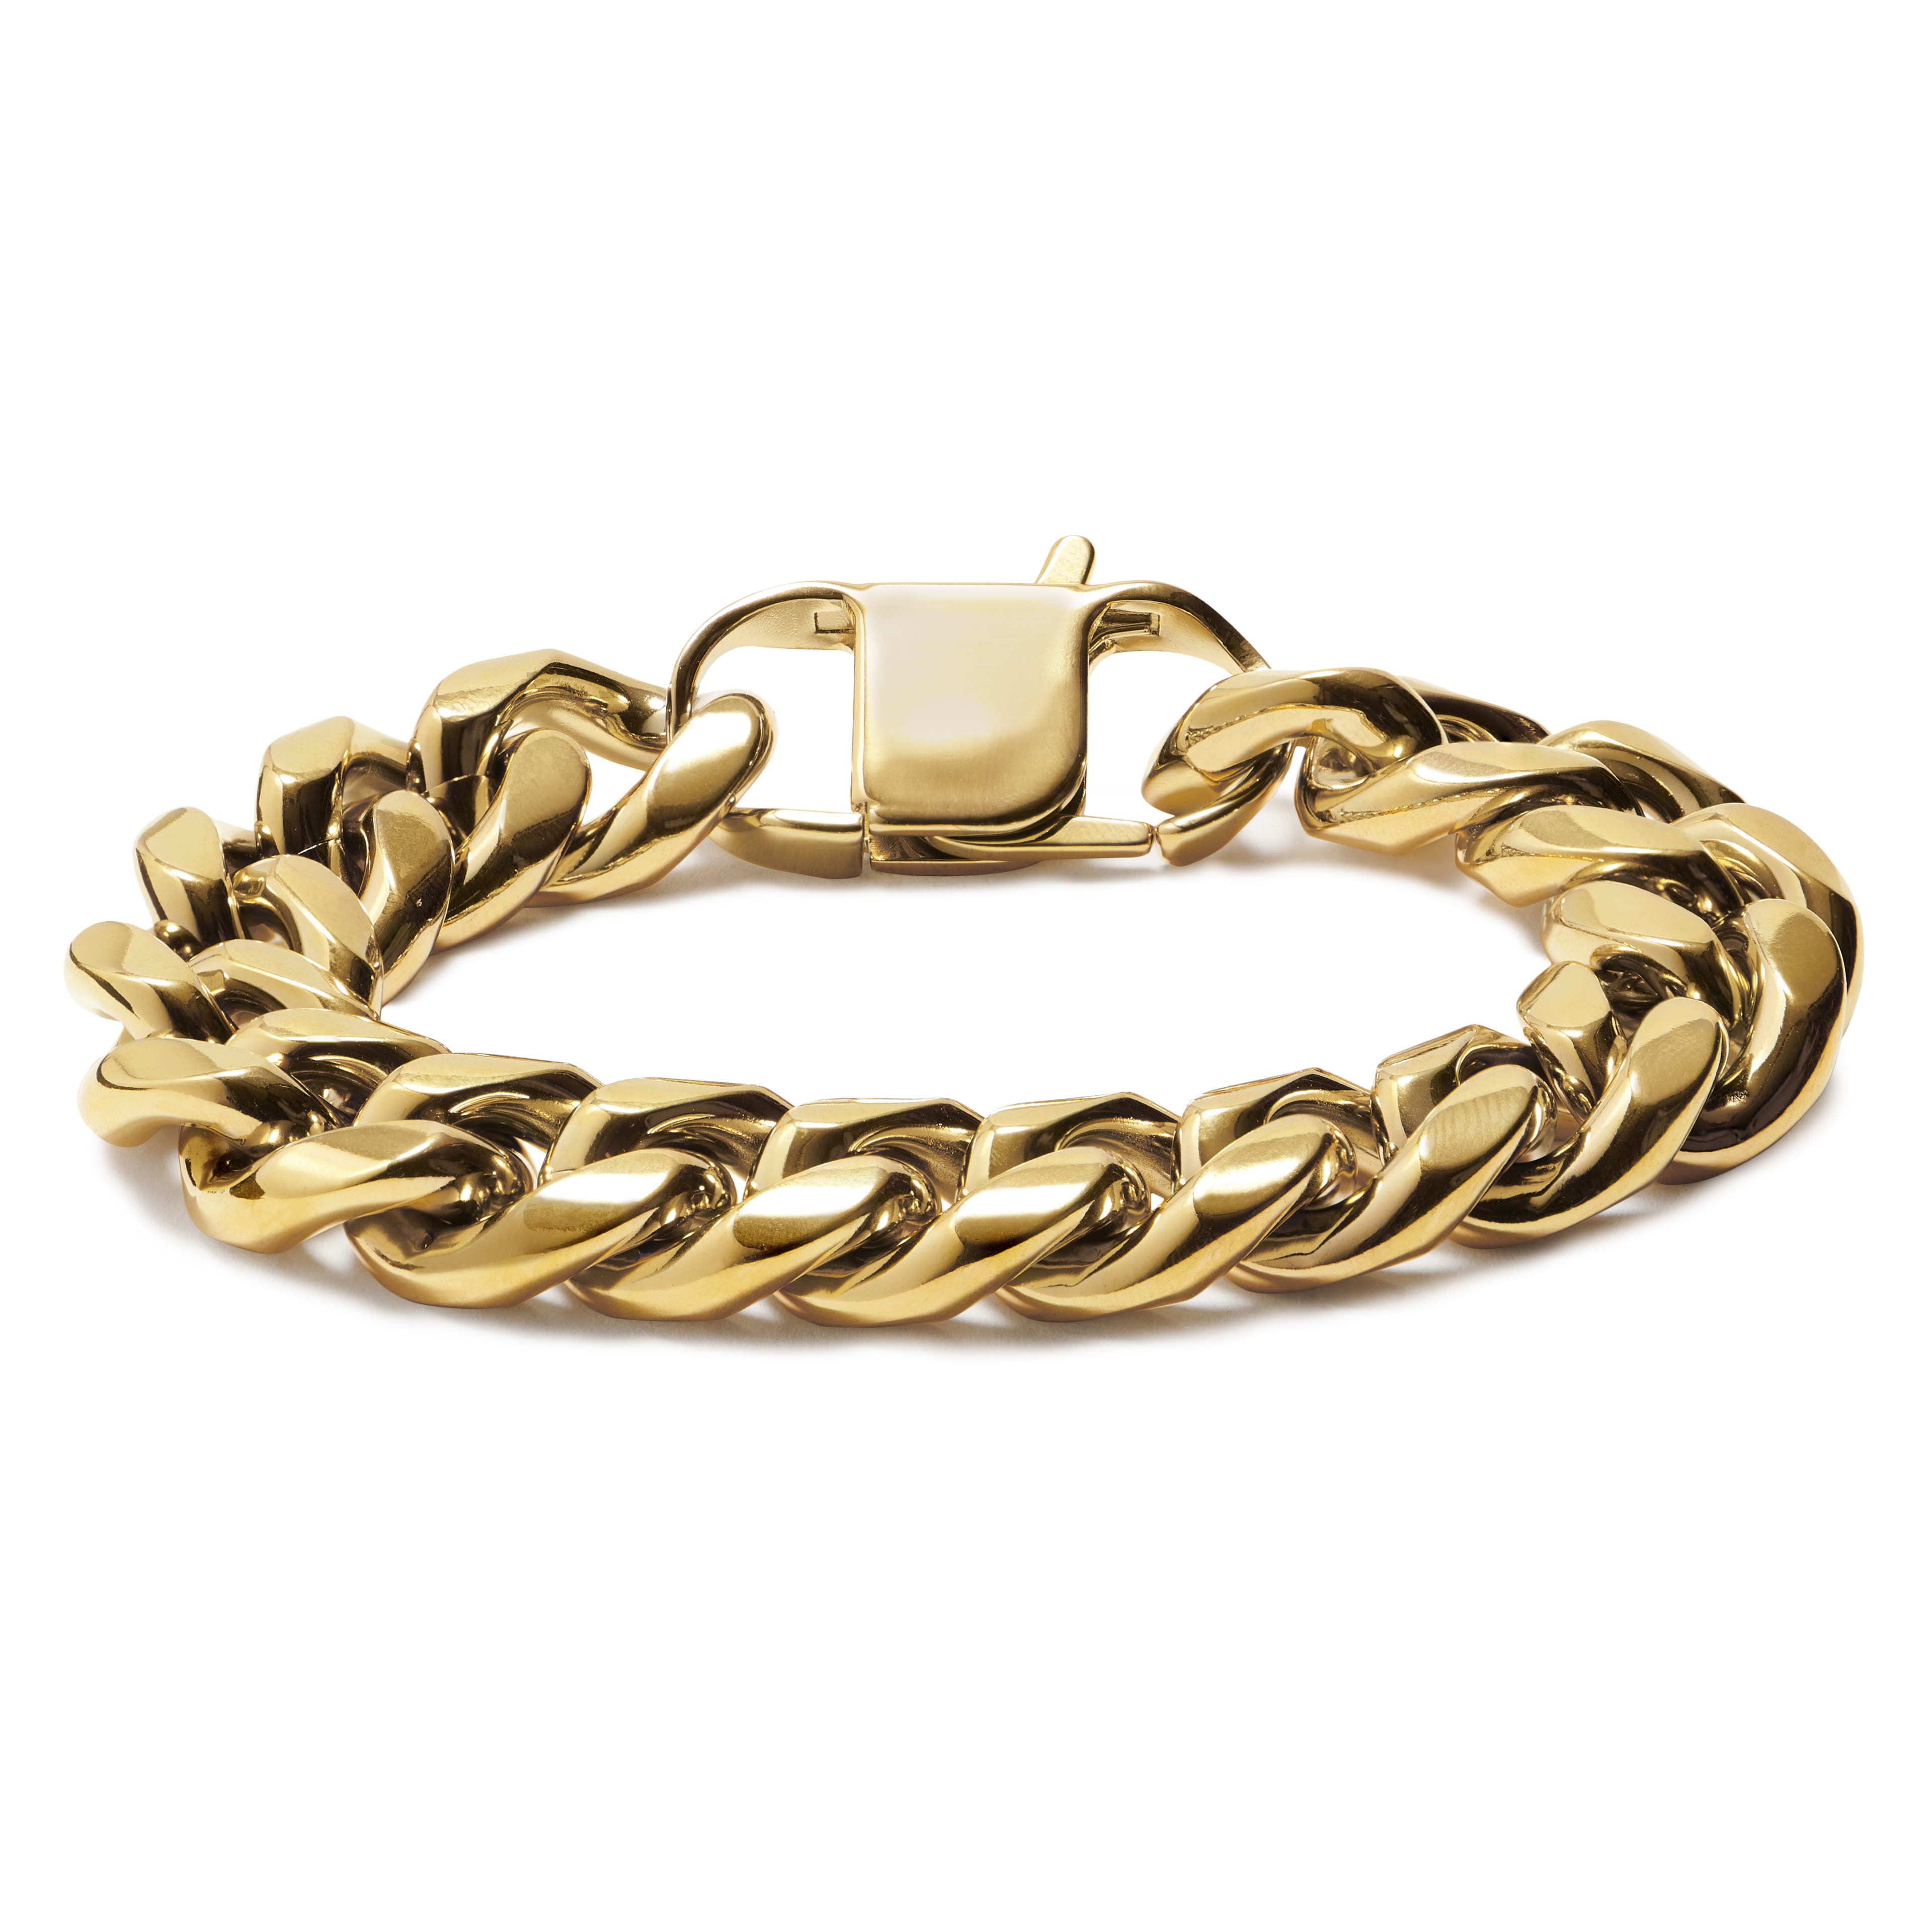 16 mm Gold-tone Steel Chain Bracelet